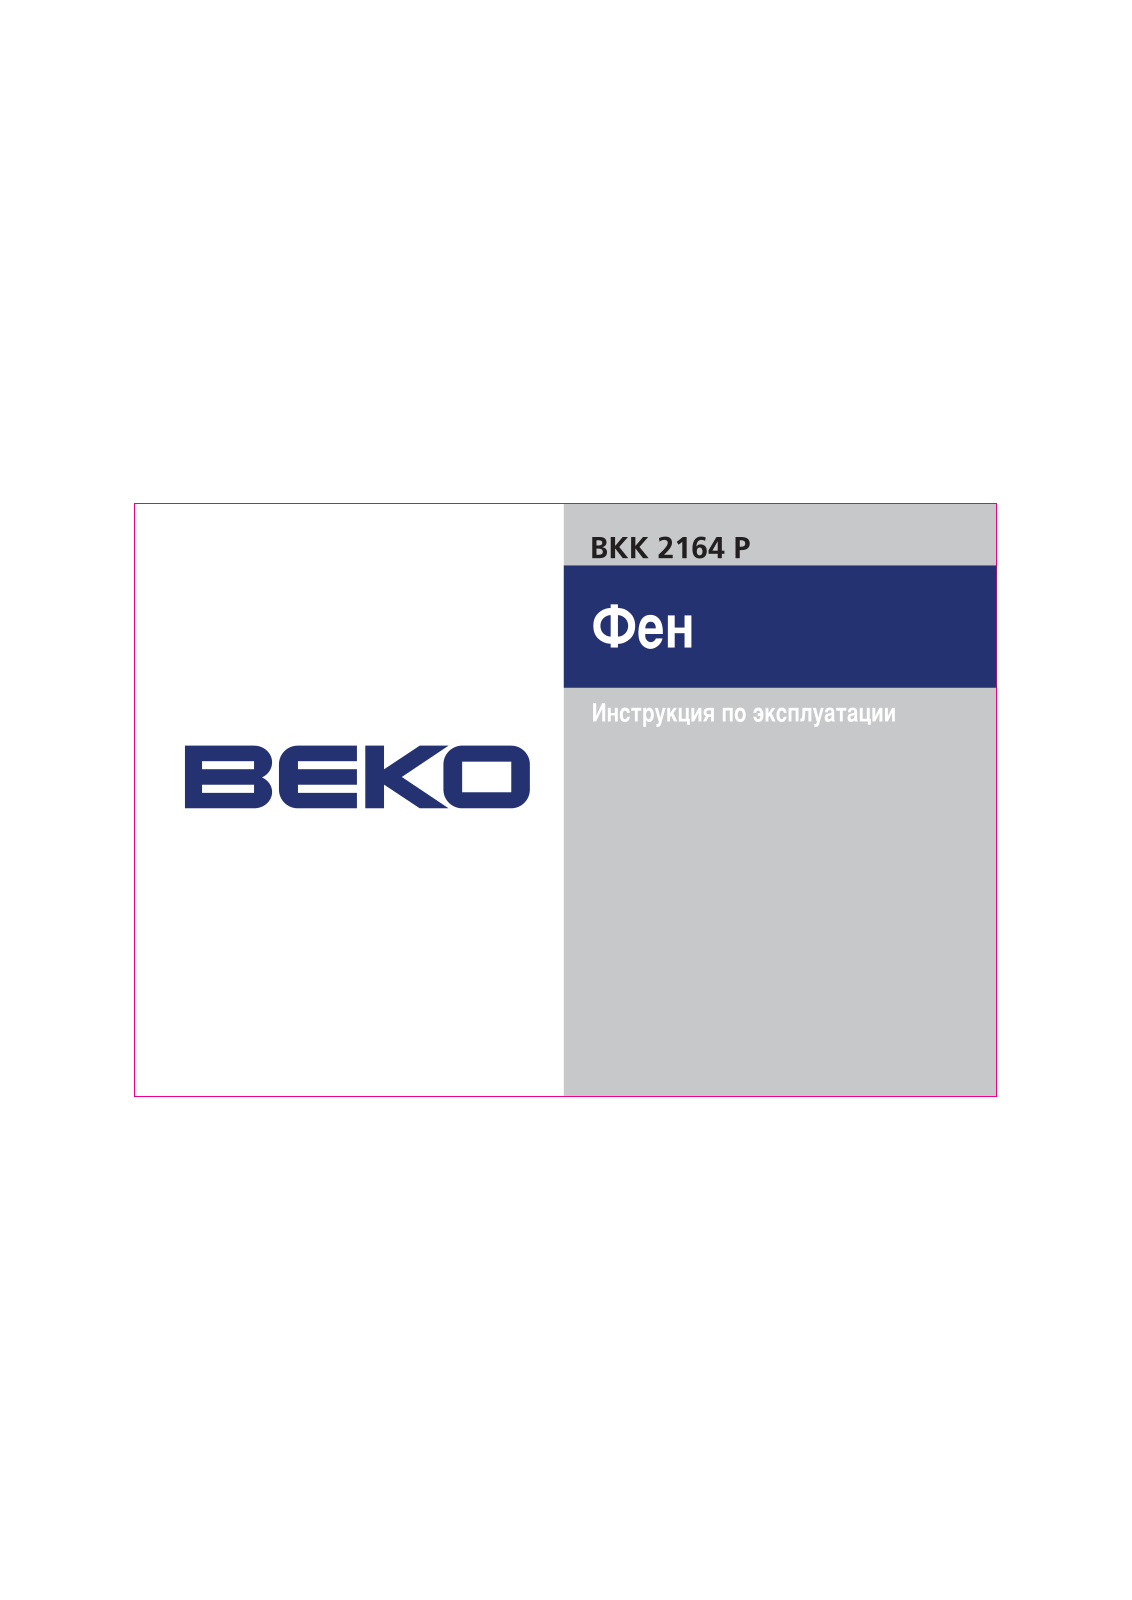 Beko BKK 2164 P Manual